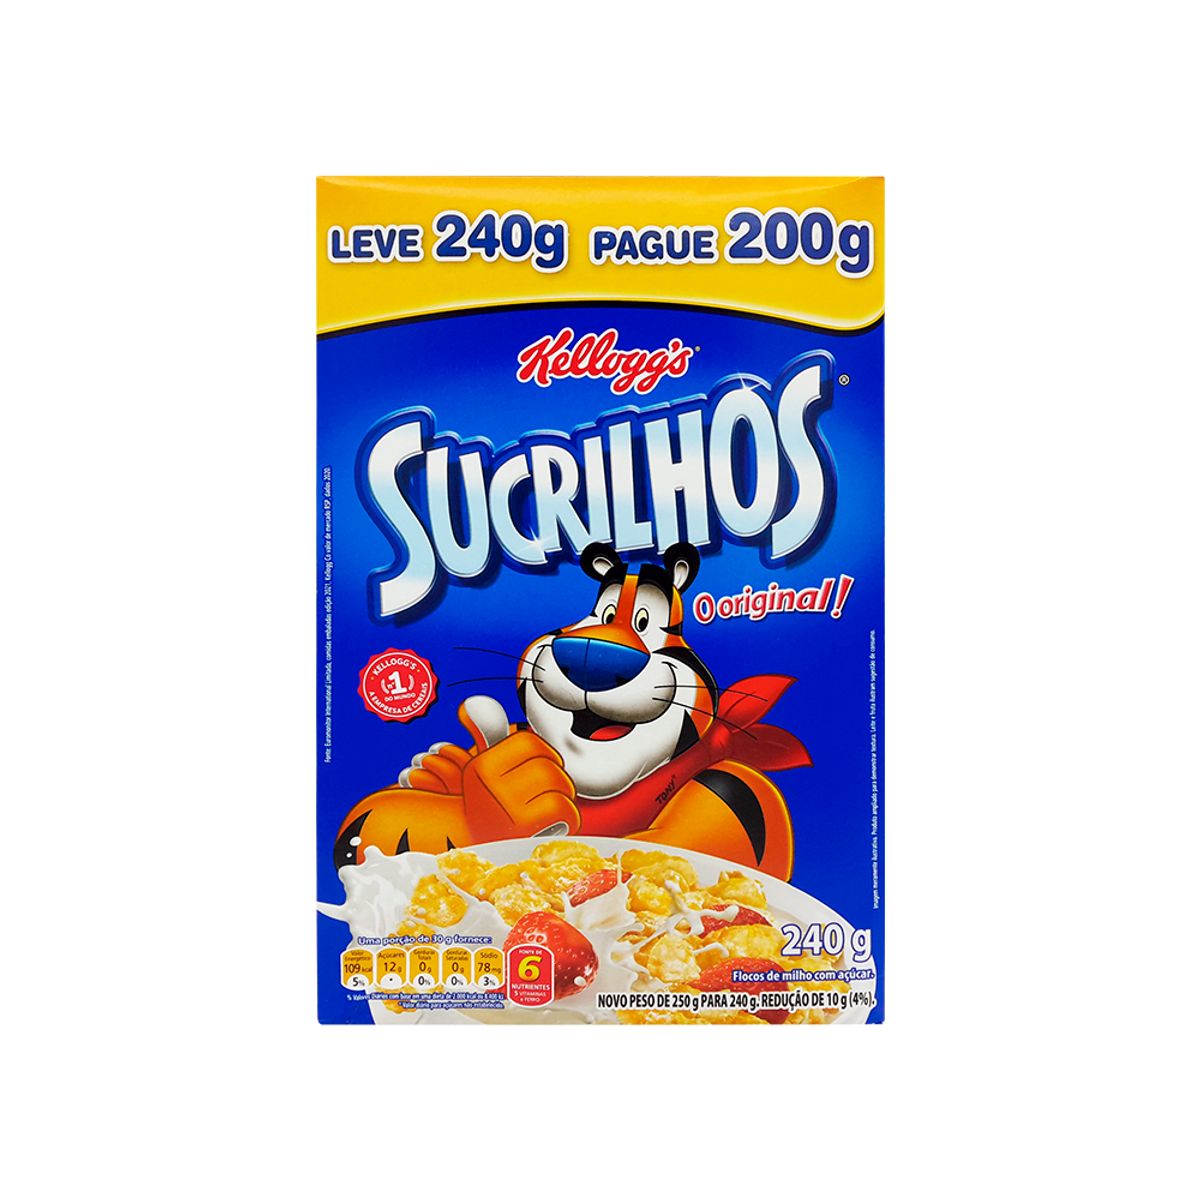 Cereal Kelloggs Sucrilhos Original Leve 240g e Pague 200g